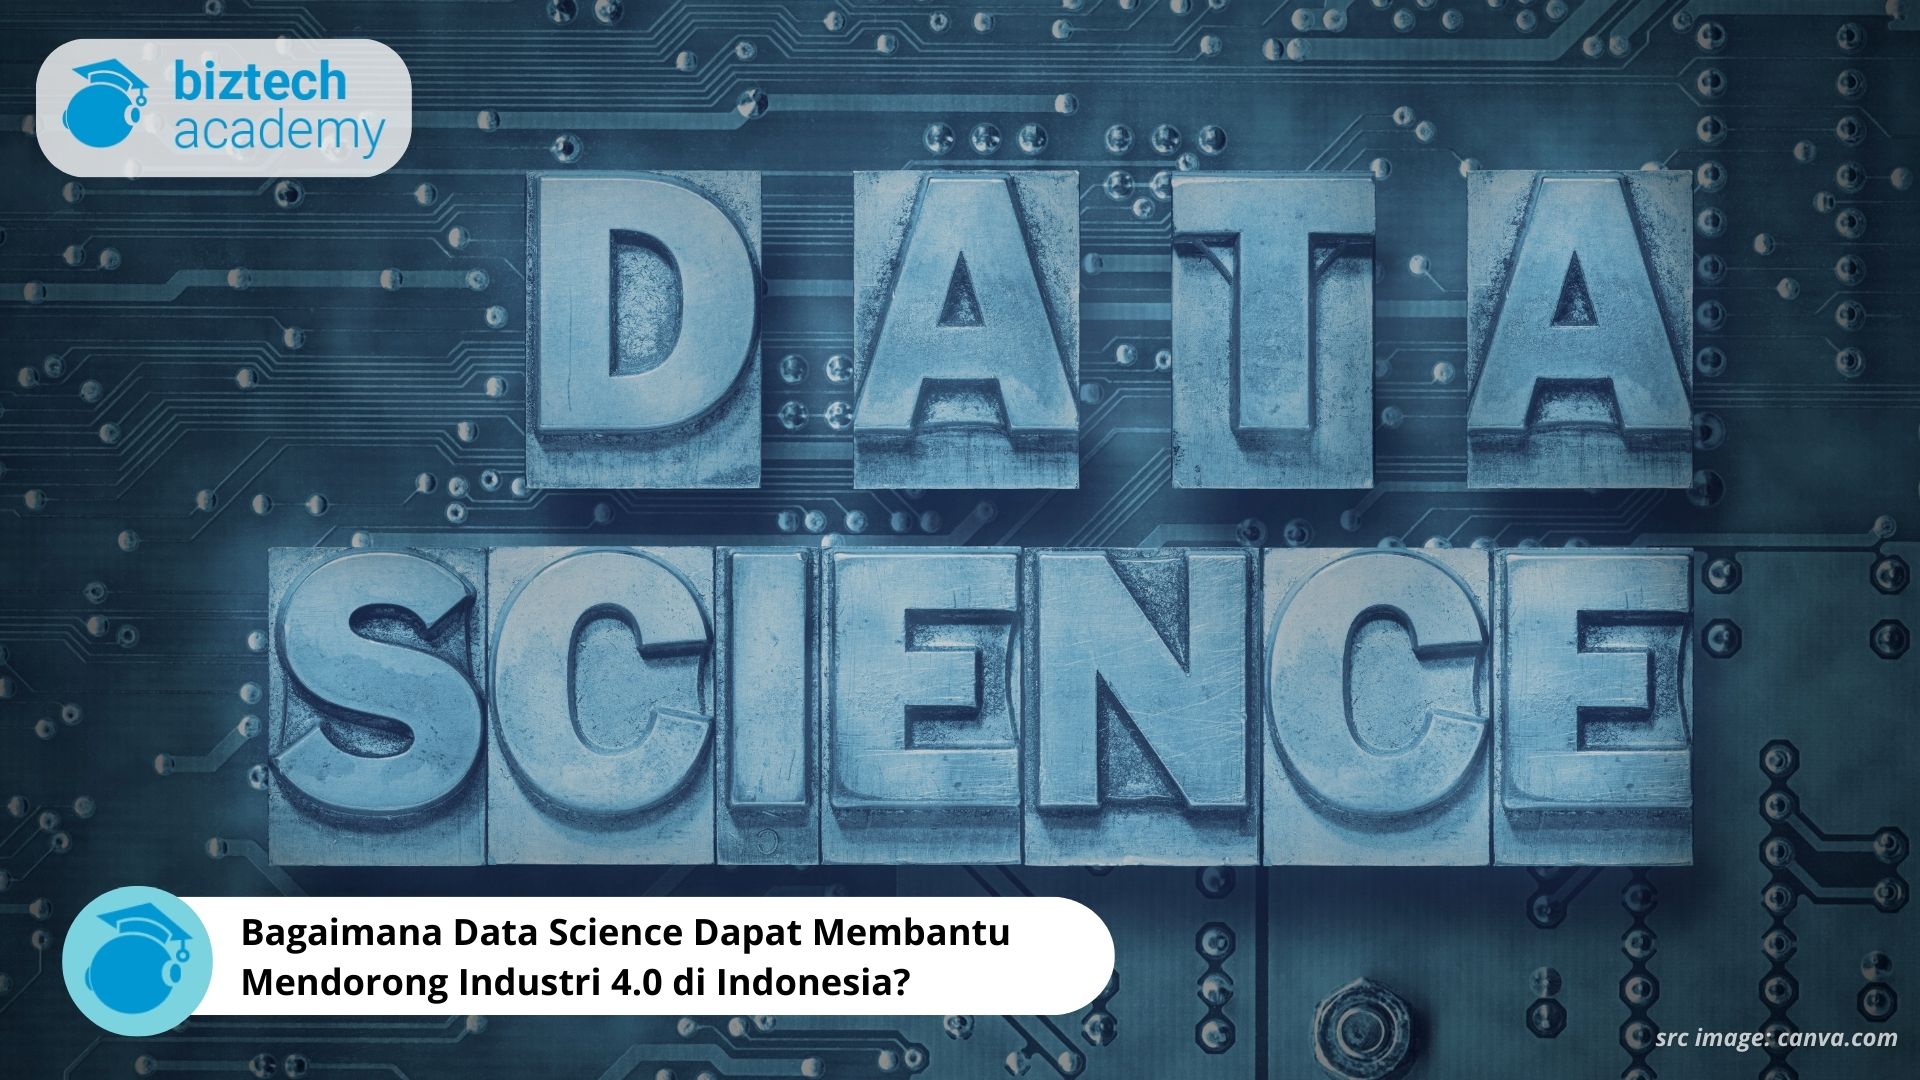 Bagaimana Data Science Dapat Membantu Mendorong Industri 4.0 di Indonesia?